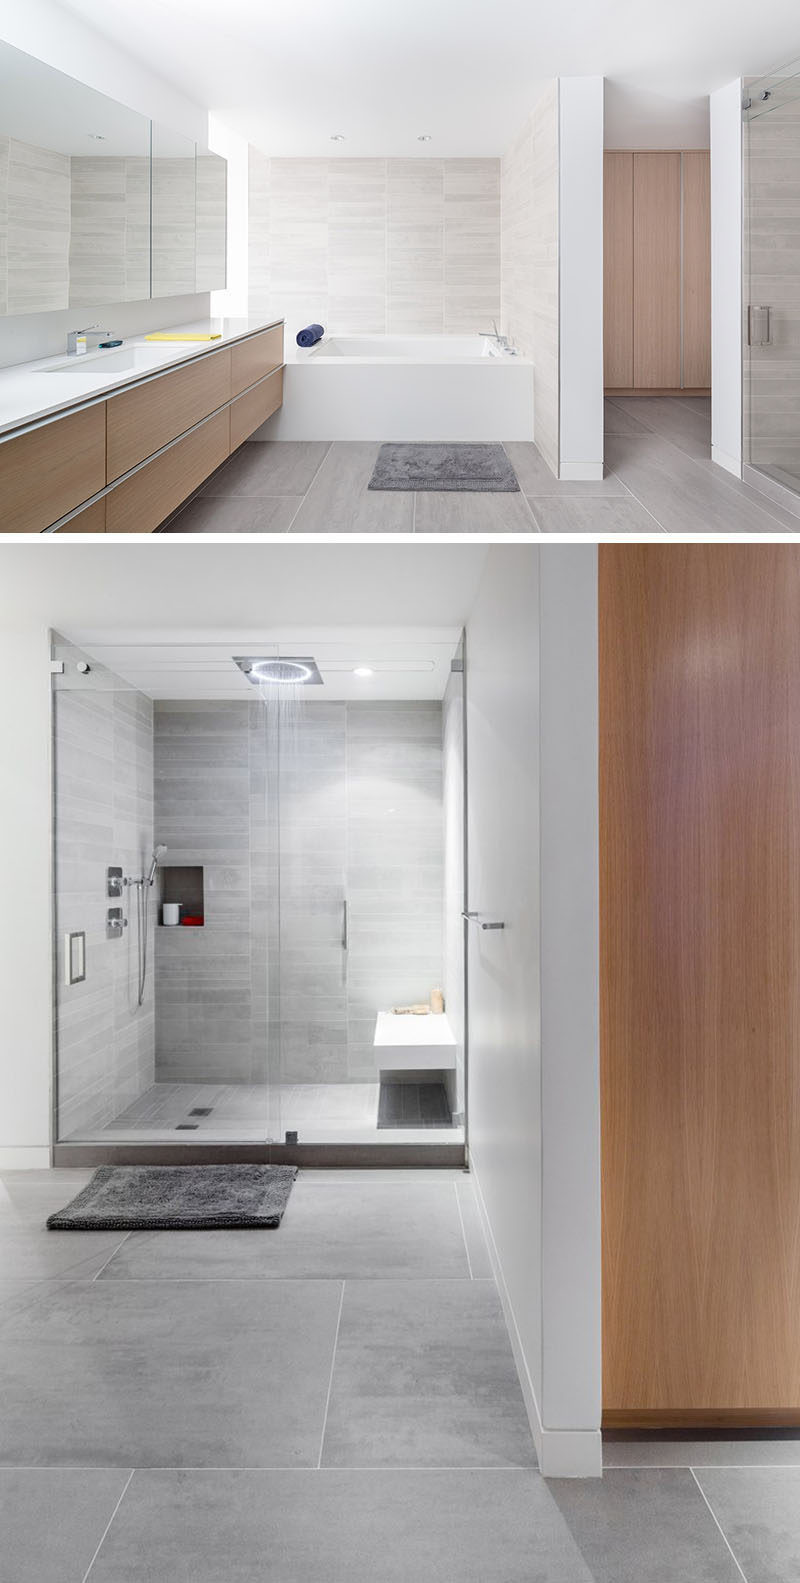 Bathroom Tile Wall
 Bathroom Tile Idea Use Tiles The Floor And